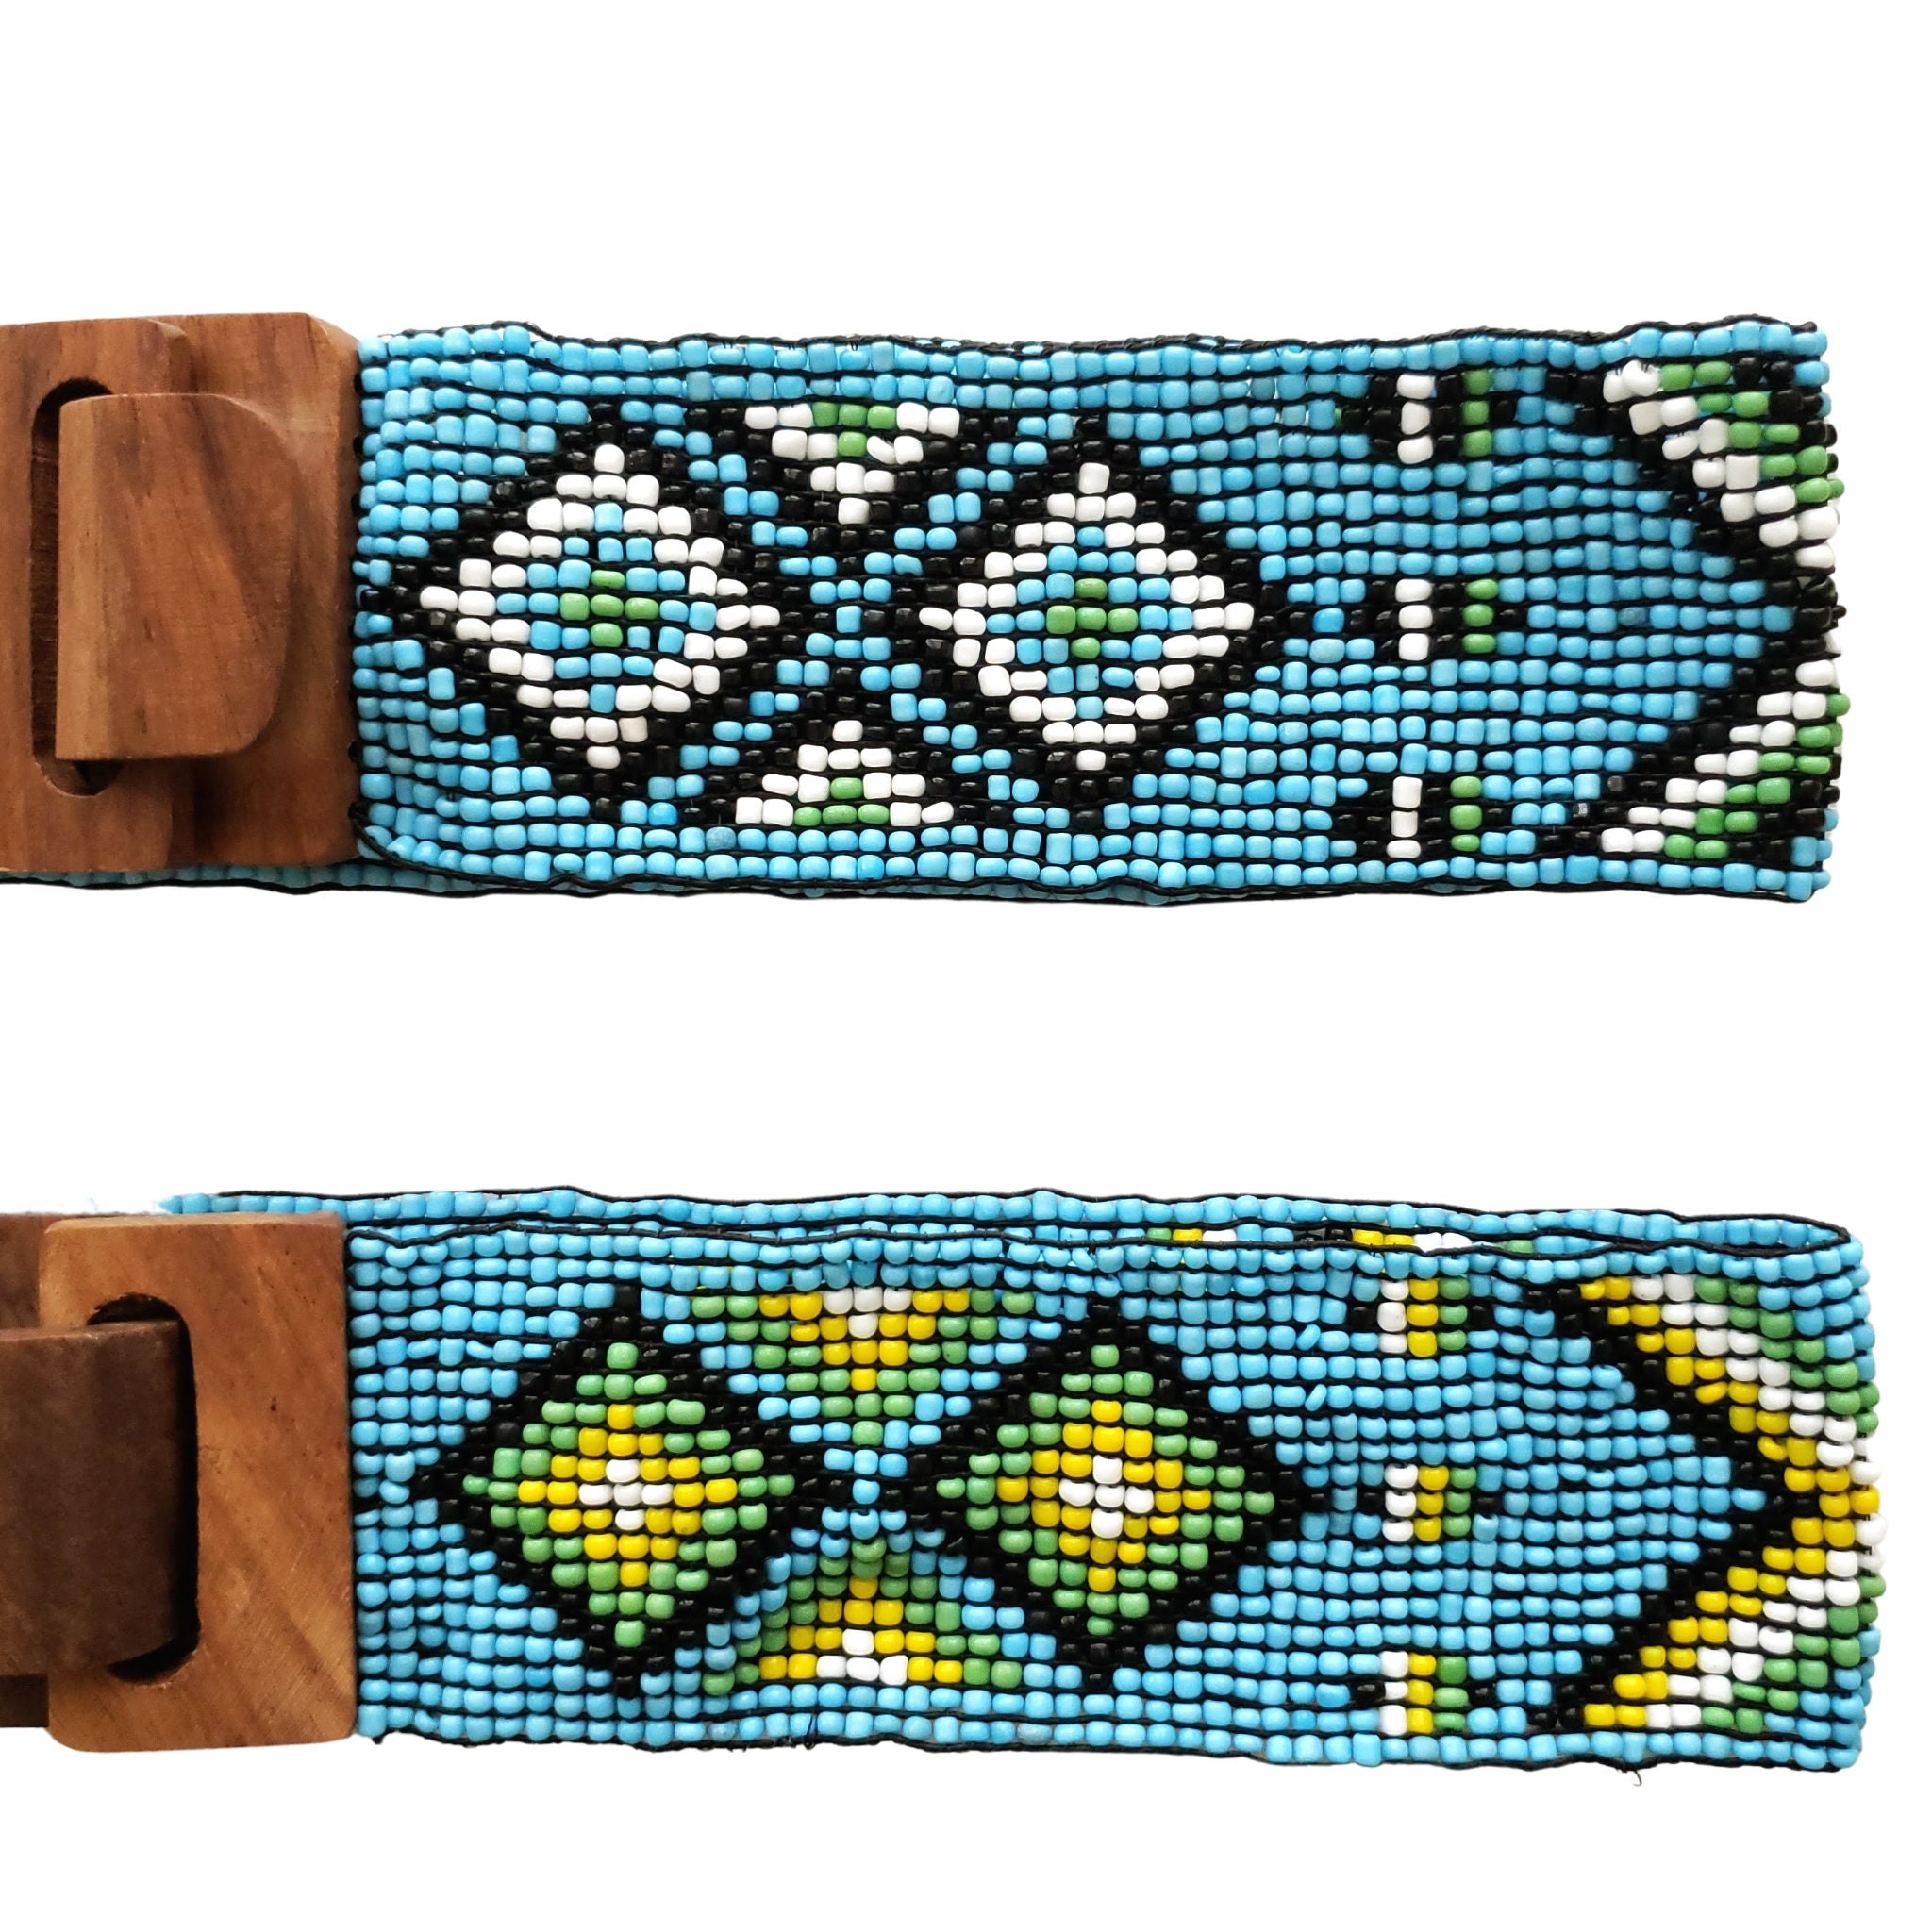 Zinj Designs Original Beaded Belts – Luxe EQ